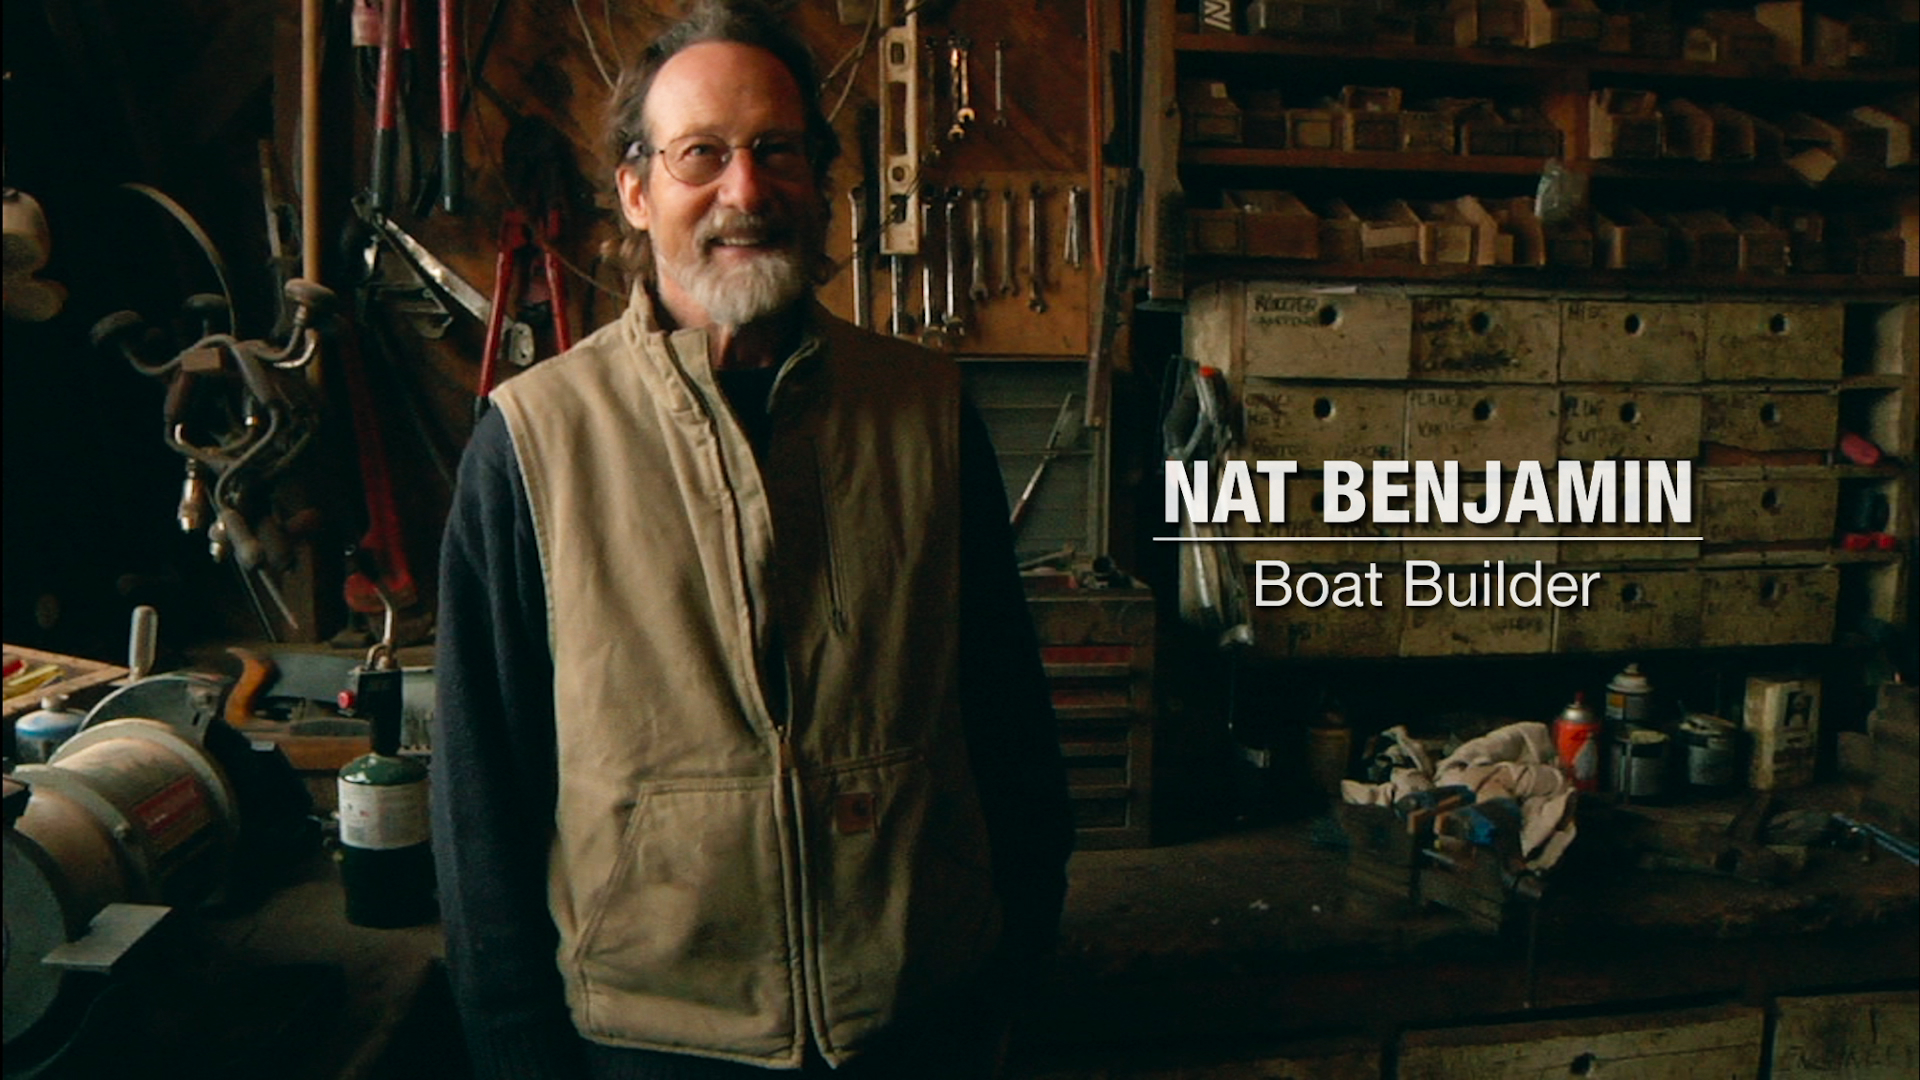 Nat Benjamin, boat builder